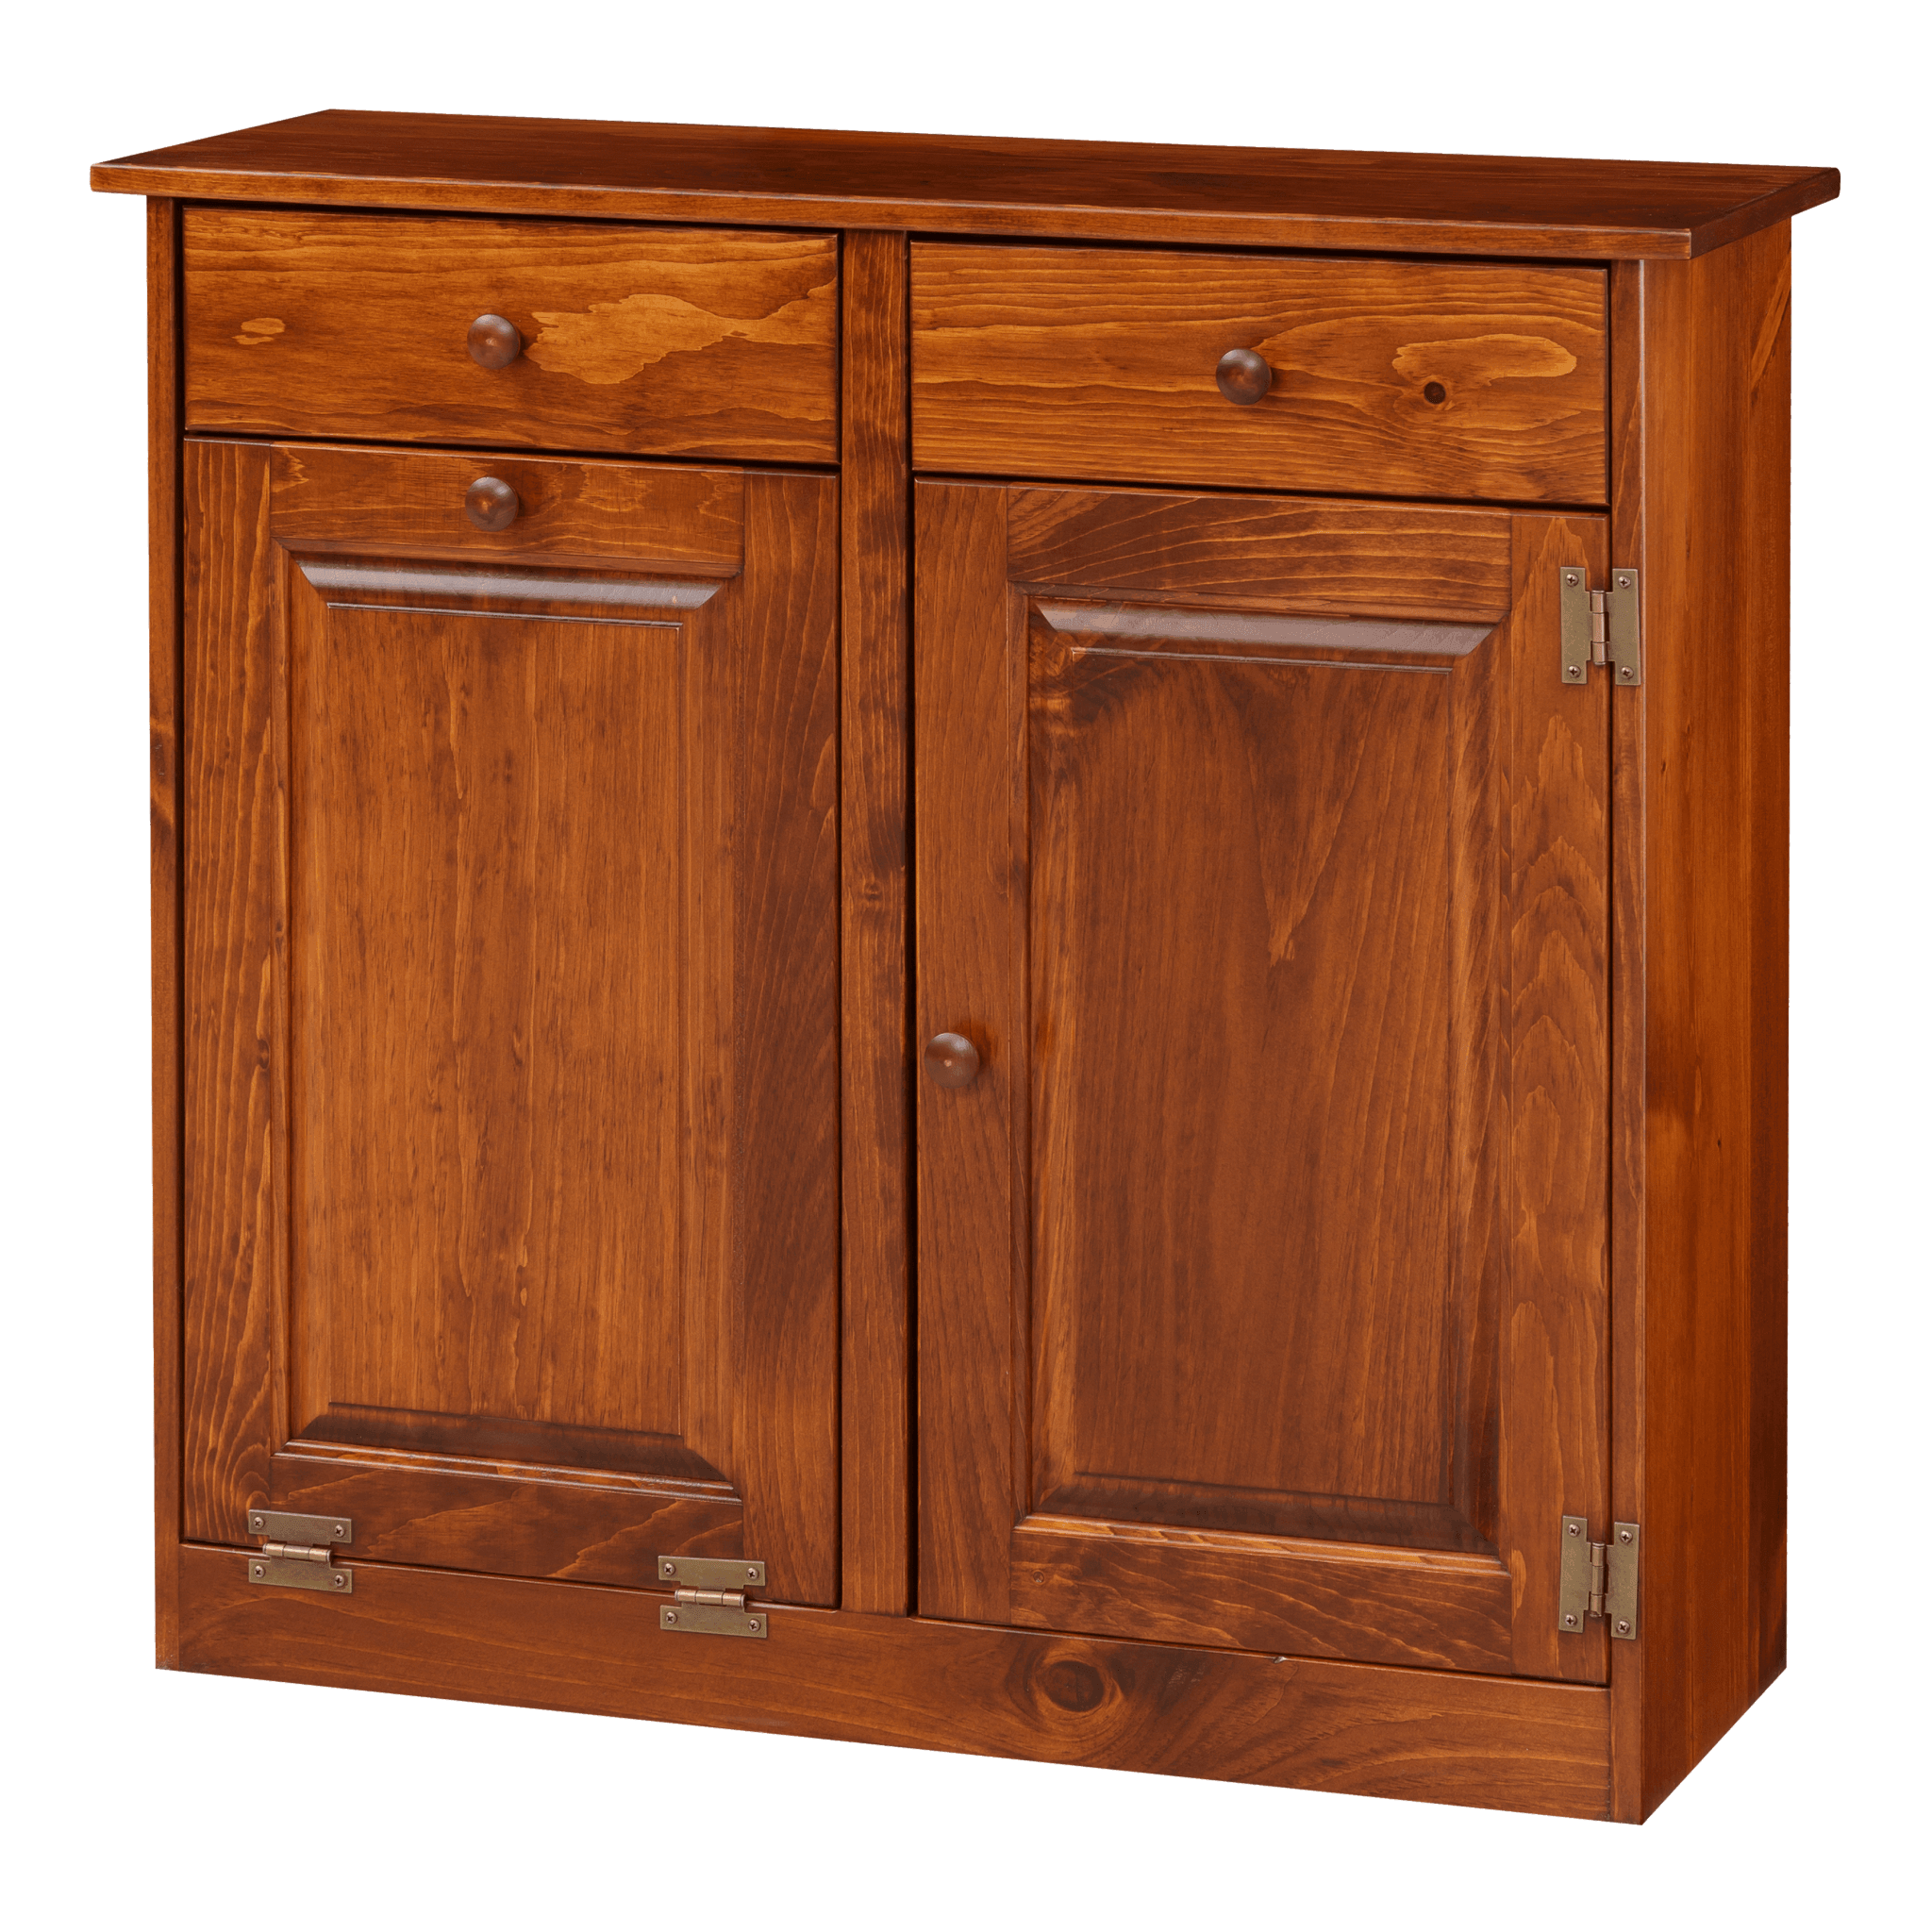 Double Trash Bin Cabinet w Wood